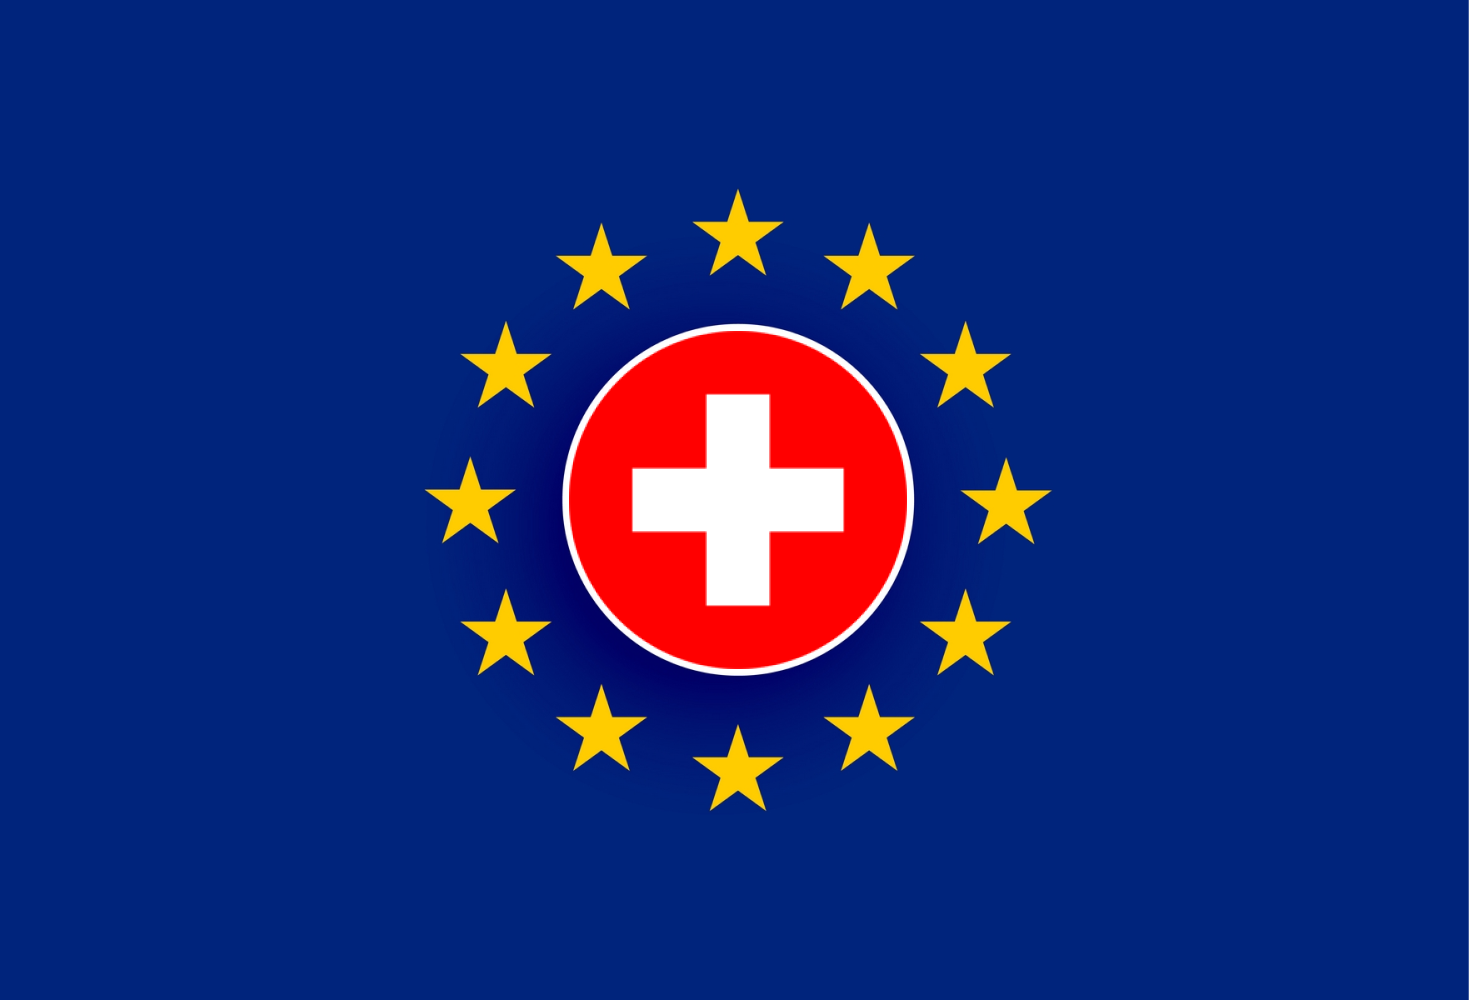  ortada İsviçre bayrağı ve etrafında Avrupa Birliği yıldızlarını temsil eden bir resim 